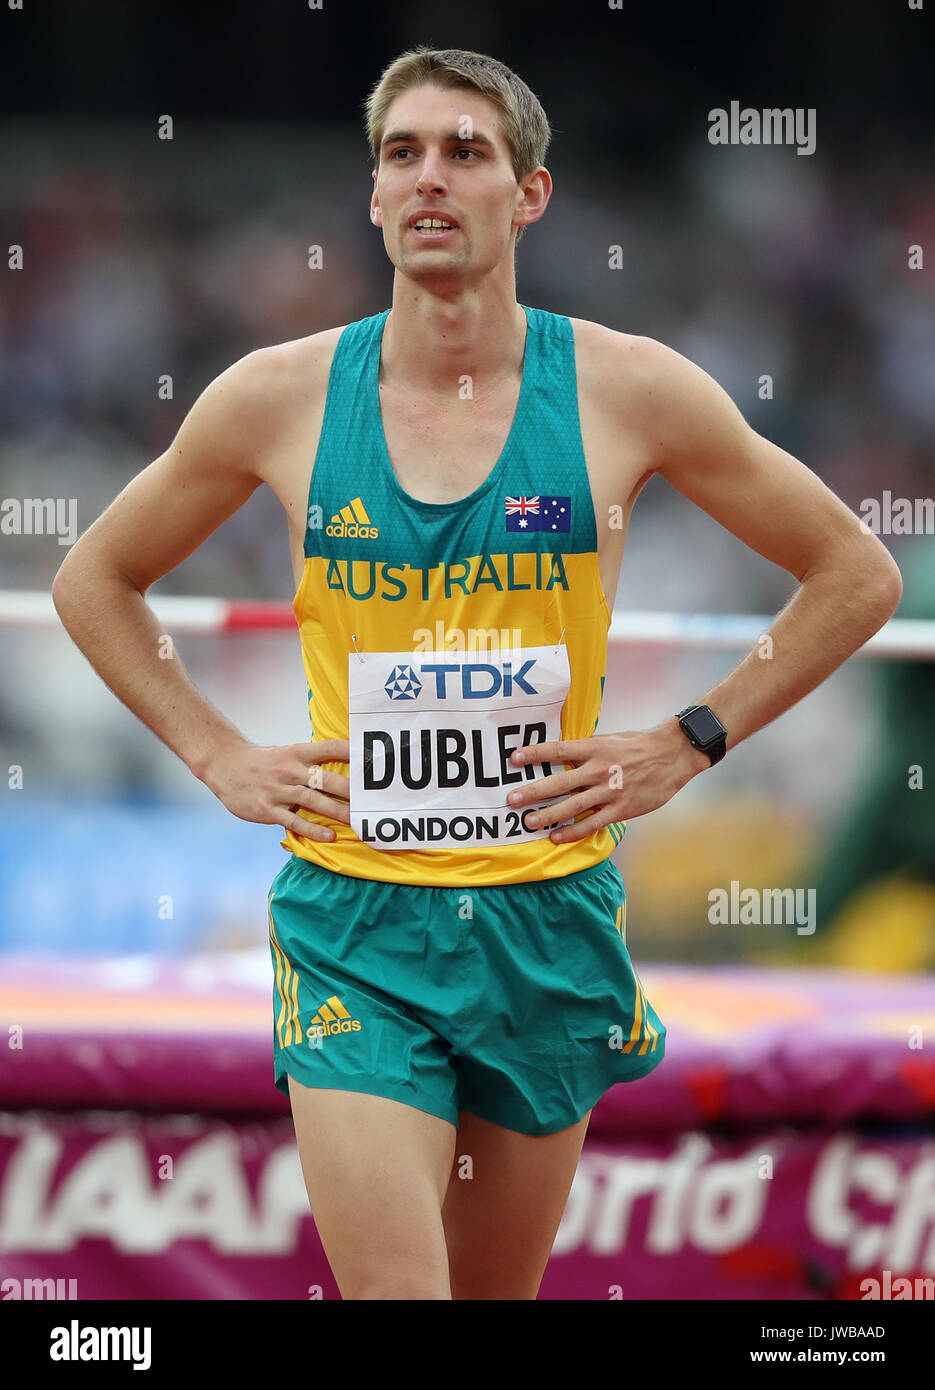 Australia's Cedric Dubler competing in 